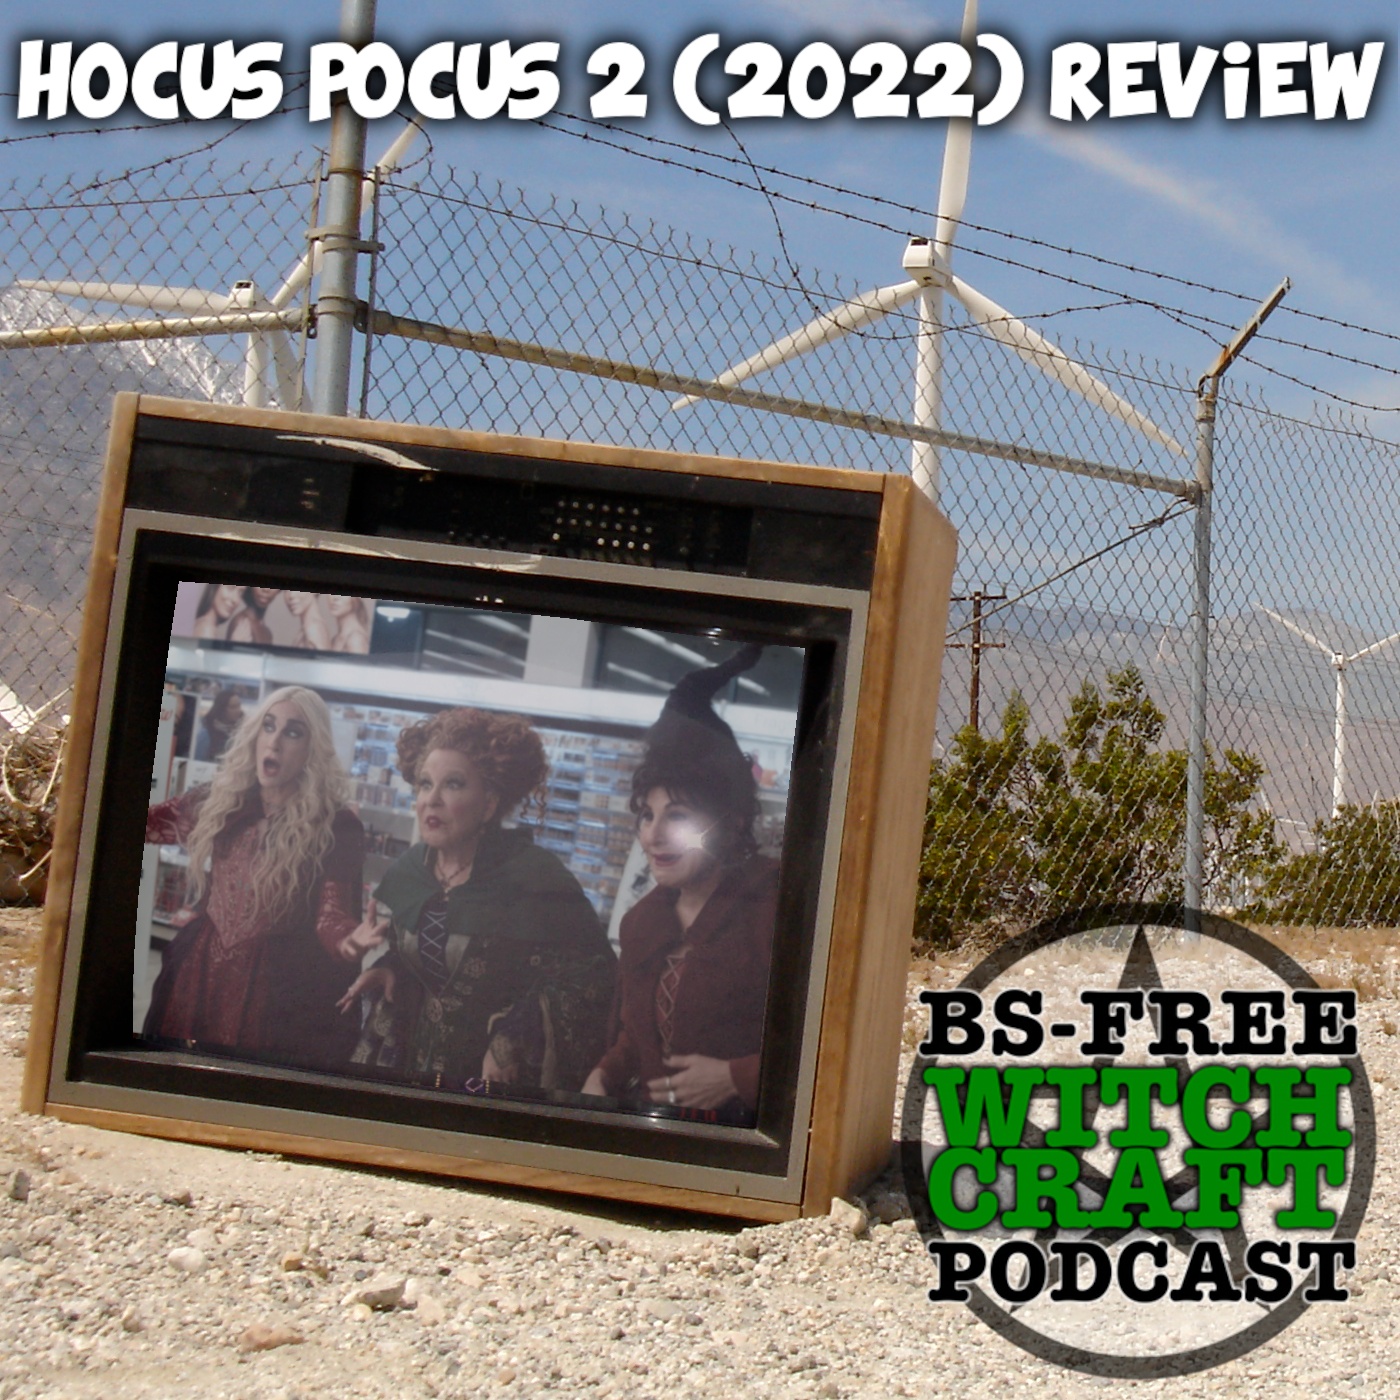 66. Hocus Pocus 2 (2022)